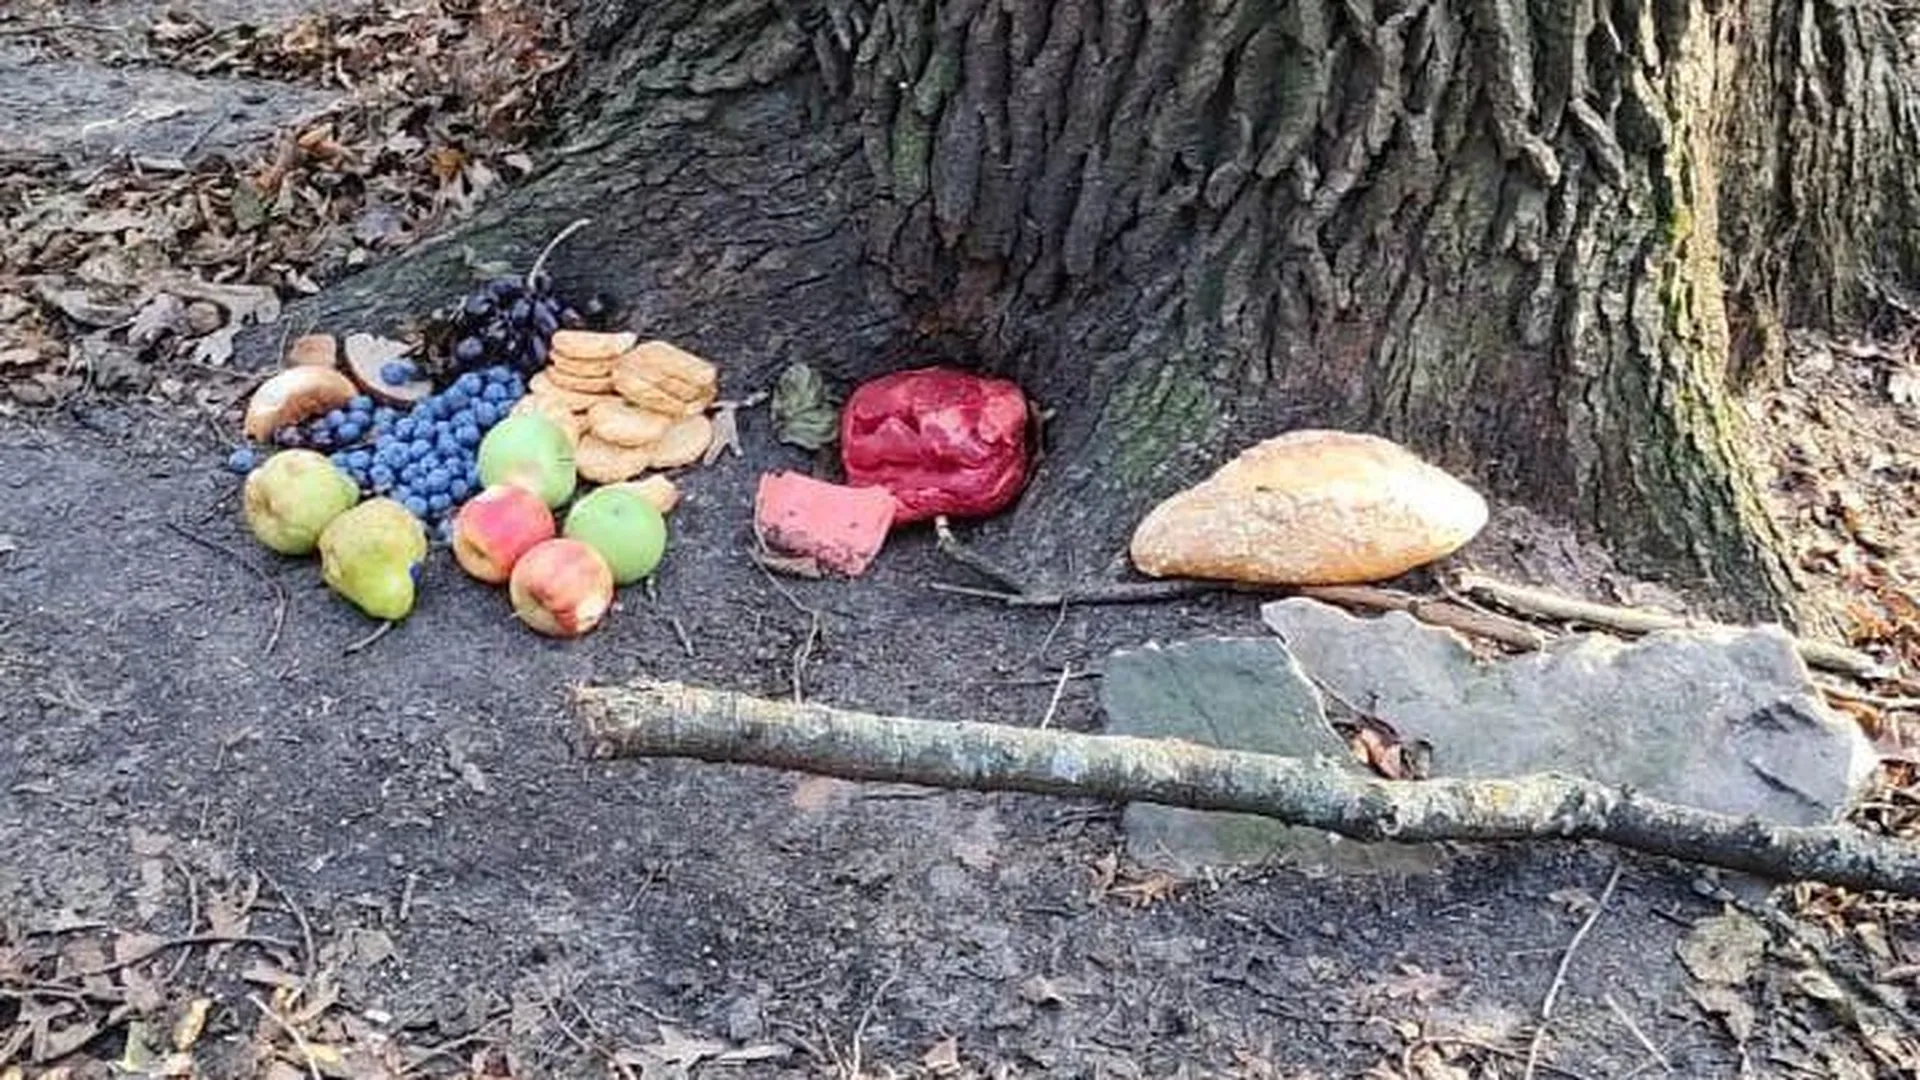 Ритуал с едой: шикарный продуктовый набор под деревом поразил прохожего в Лыткарино